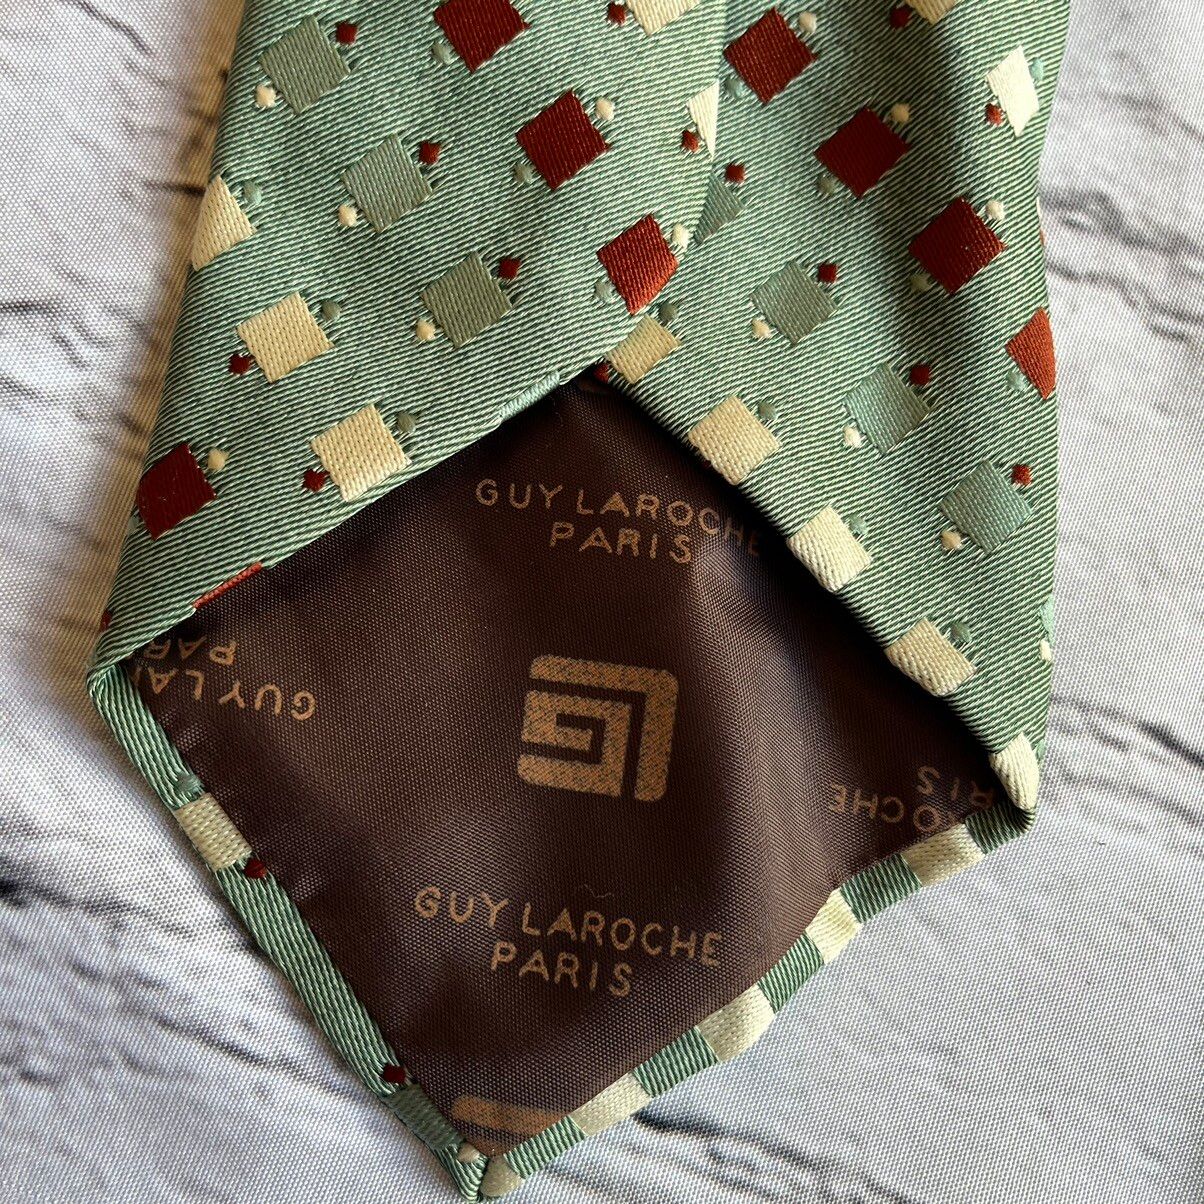 Vintage Guy Laroche Cravates Paris Vintage Mens Geometric Print Tie Size ONE SIZE - 6 Thumbnail